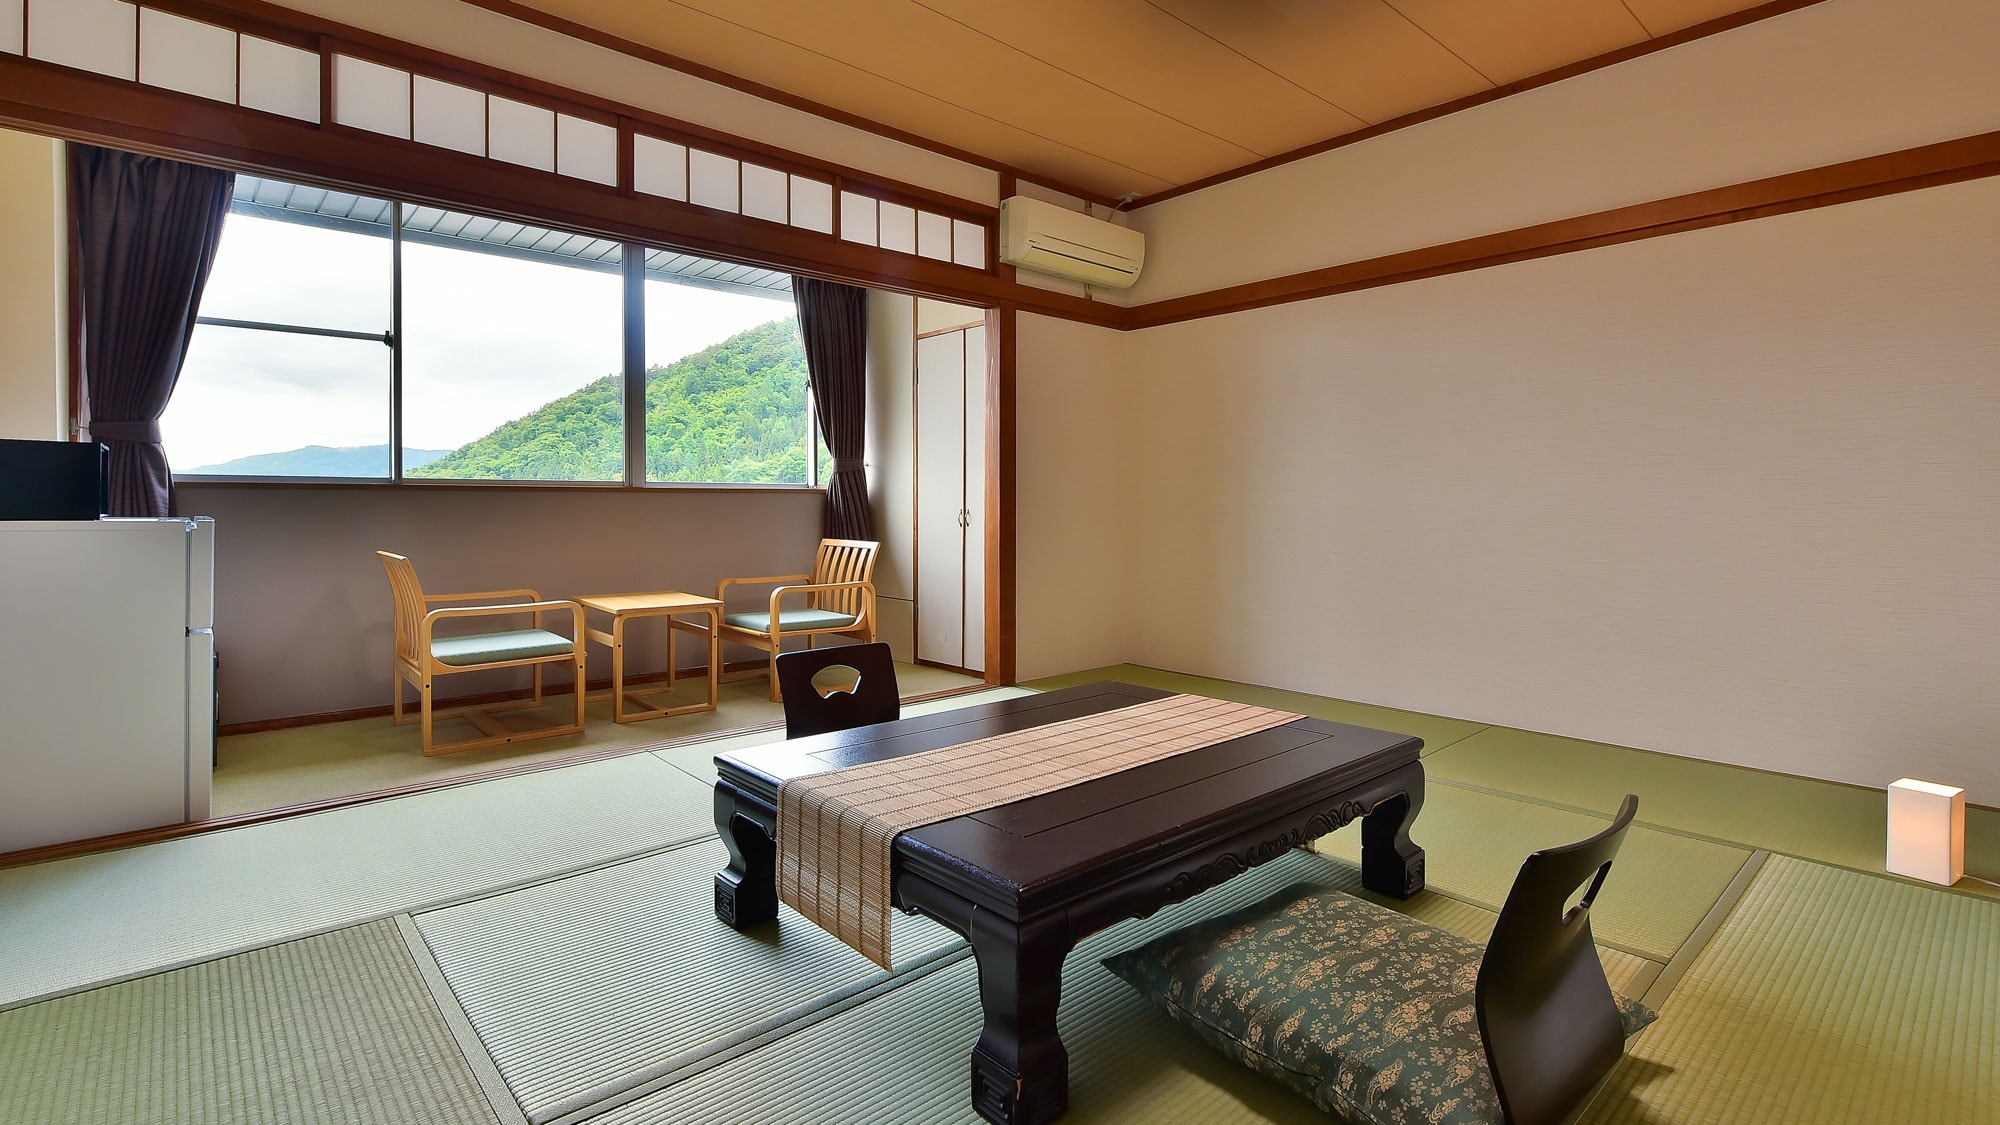 ห้องสไตล์ญี่ปุ่น 10 เสื่อทาทามิ (พร้อมตู้อาบน้ำฝักบัวและห้องสุขา)